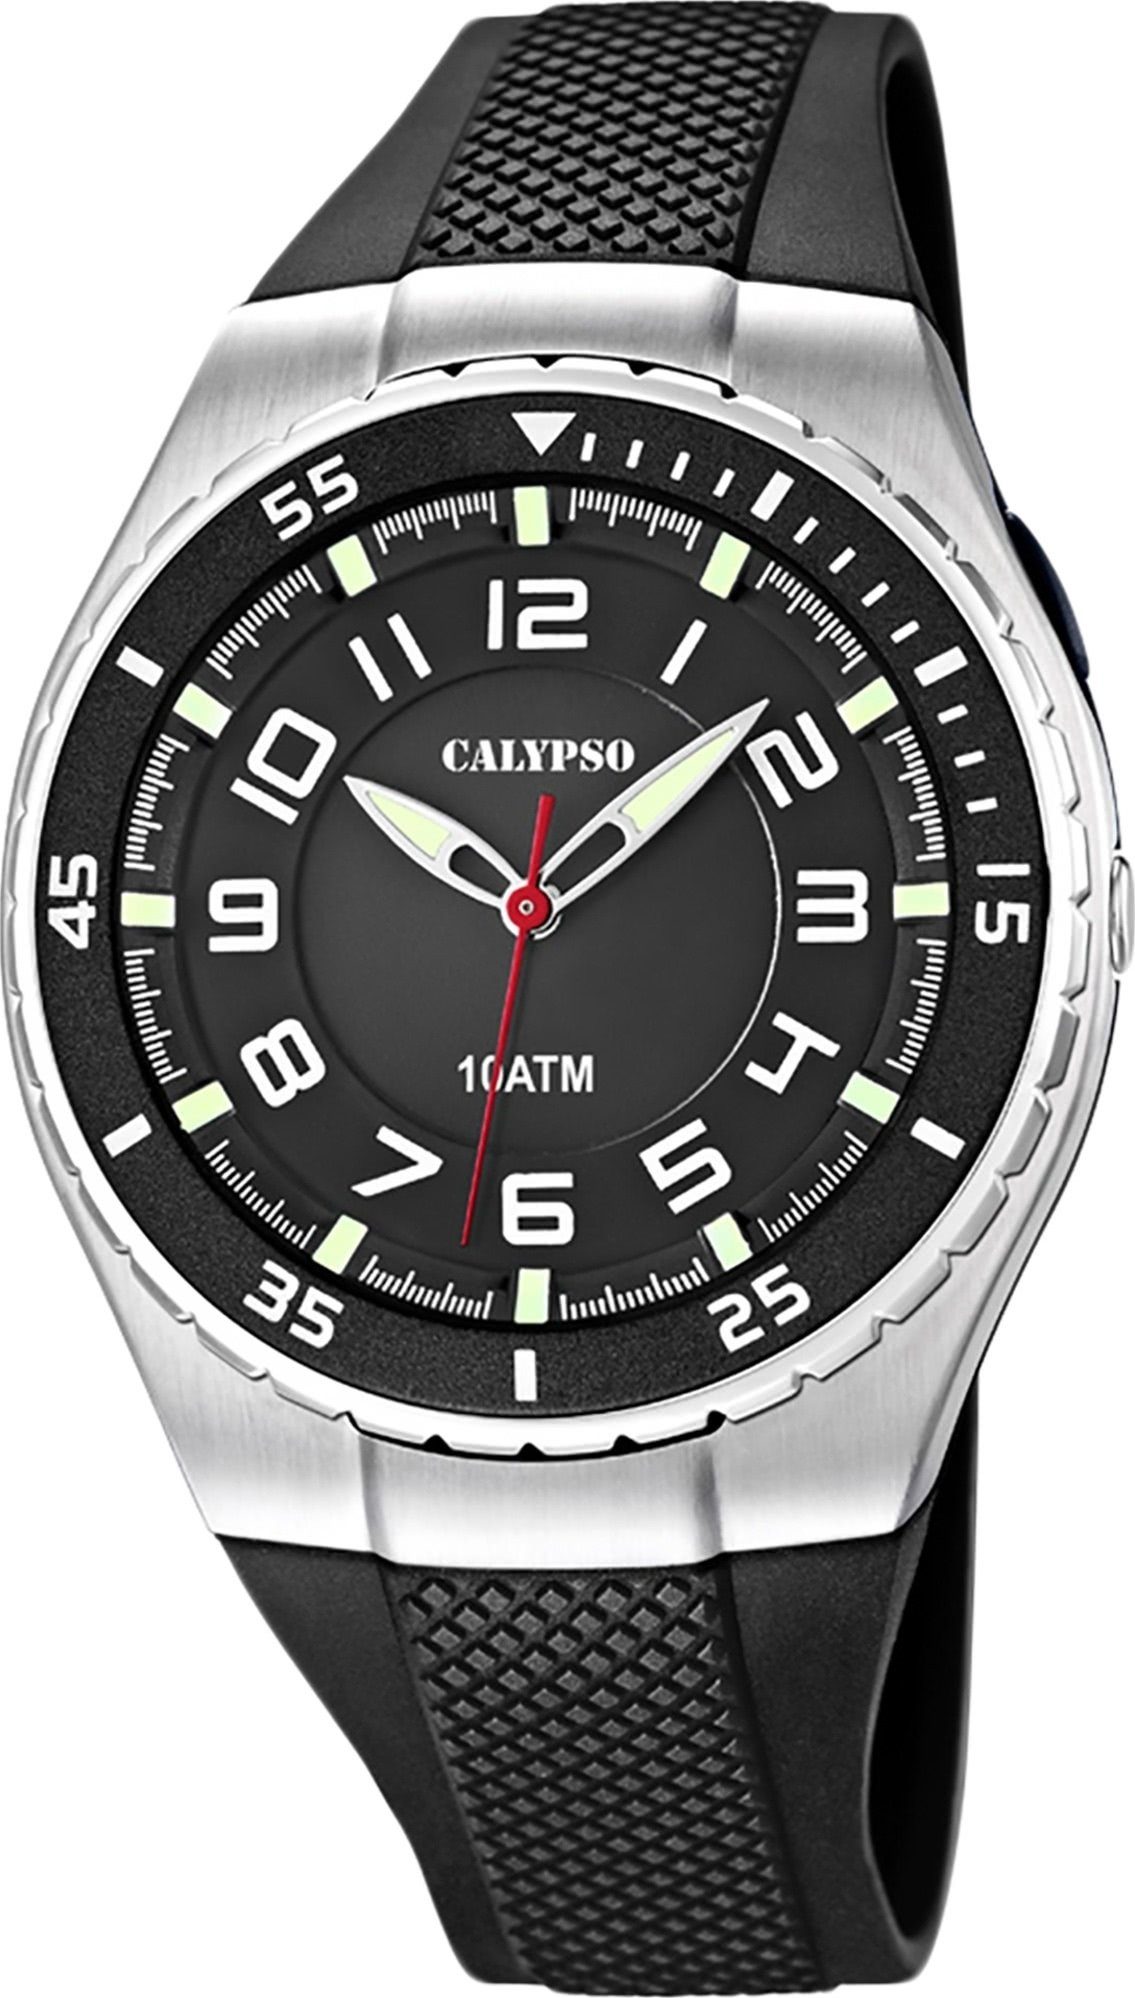 rund, schwarz, WATCHES Uhr Calypso Armbanduhr K6063/4 Fashion PURarmband Kunststoffband, Quarzuhr Herren CALYPSO Herren